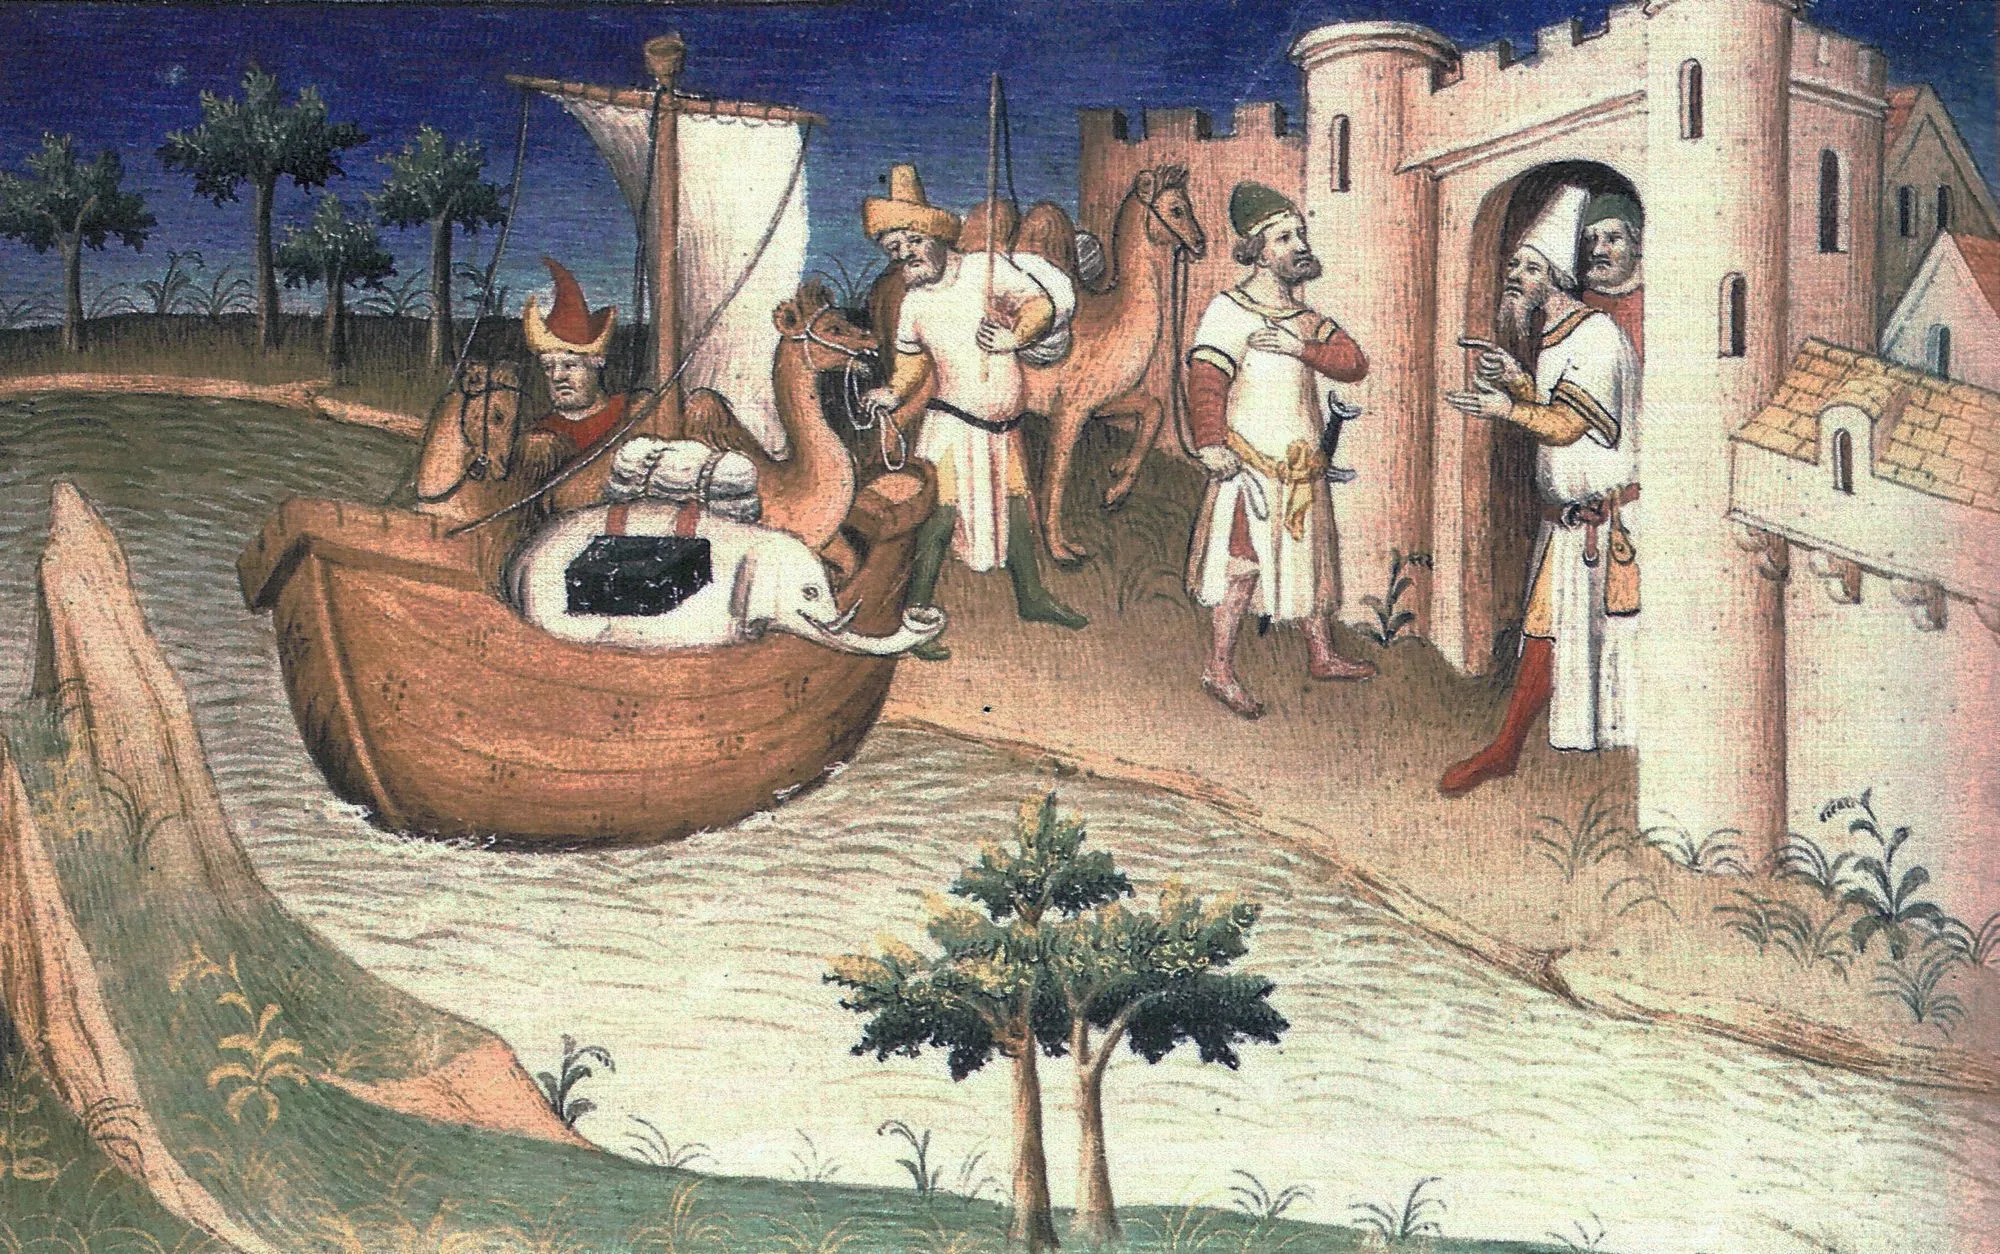 Arrivée à Ormuz, enluminure dans un manuscrit du Devisement du monde de Marco Polo, 1412